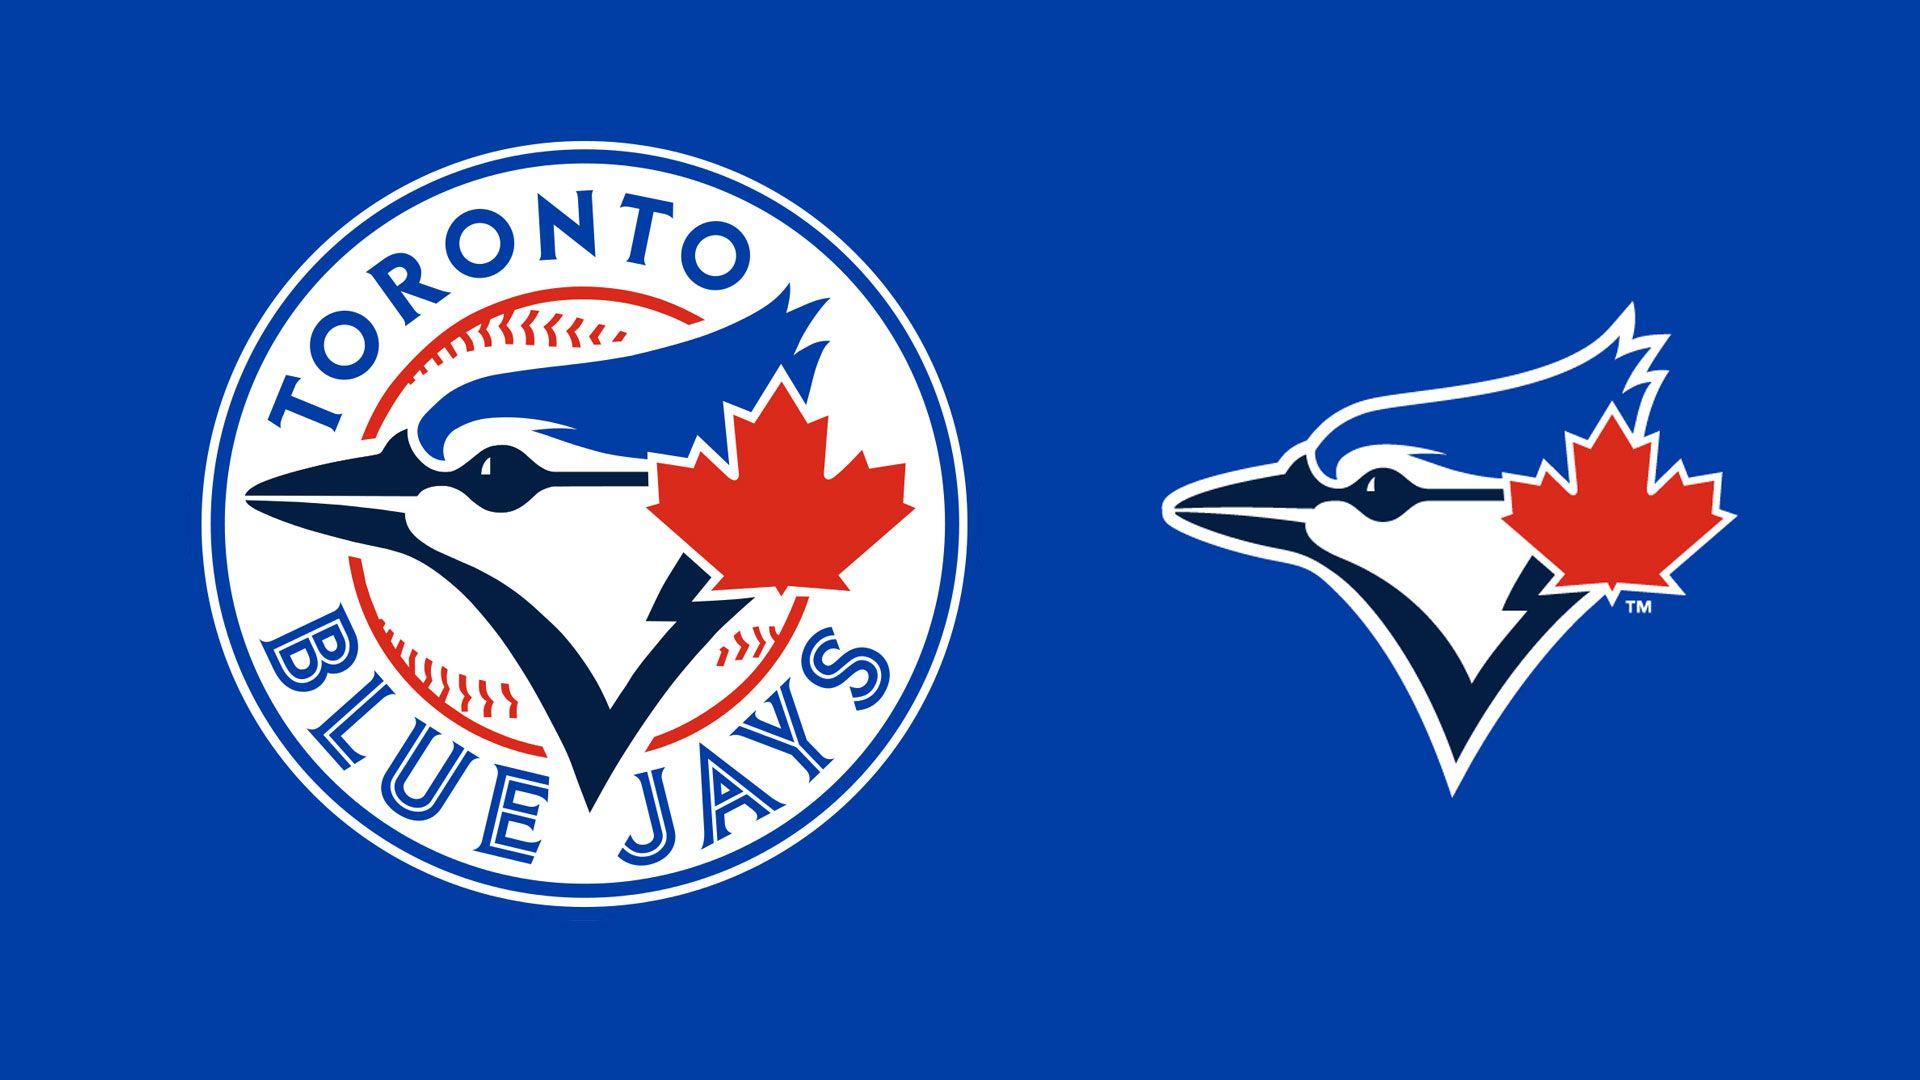 MLB Toronto Blue Jays Team Logo wallpaper 2018 in Baseball